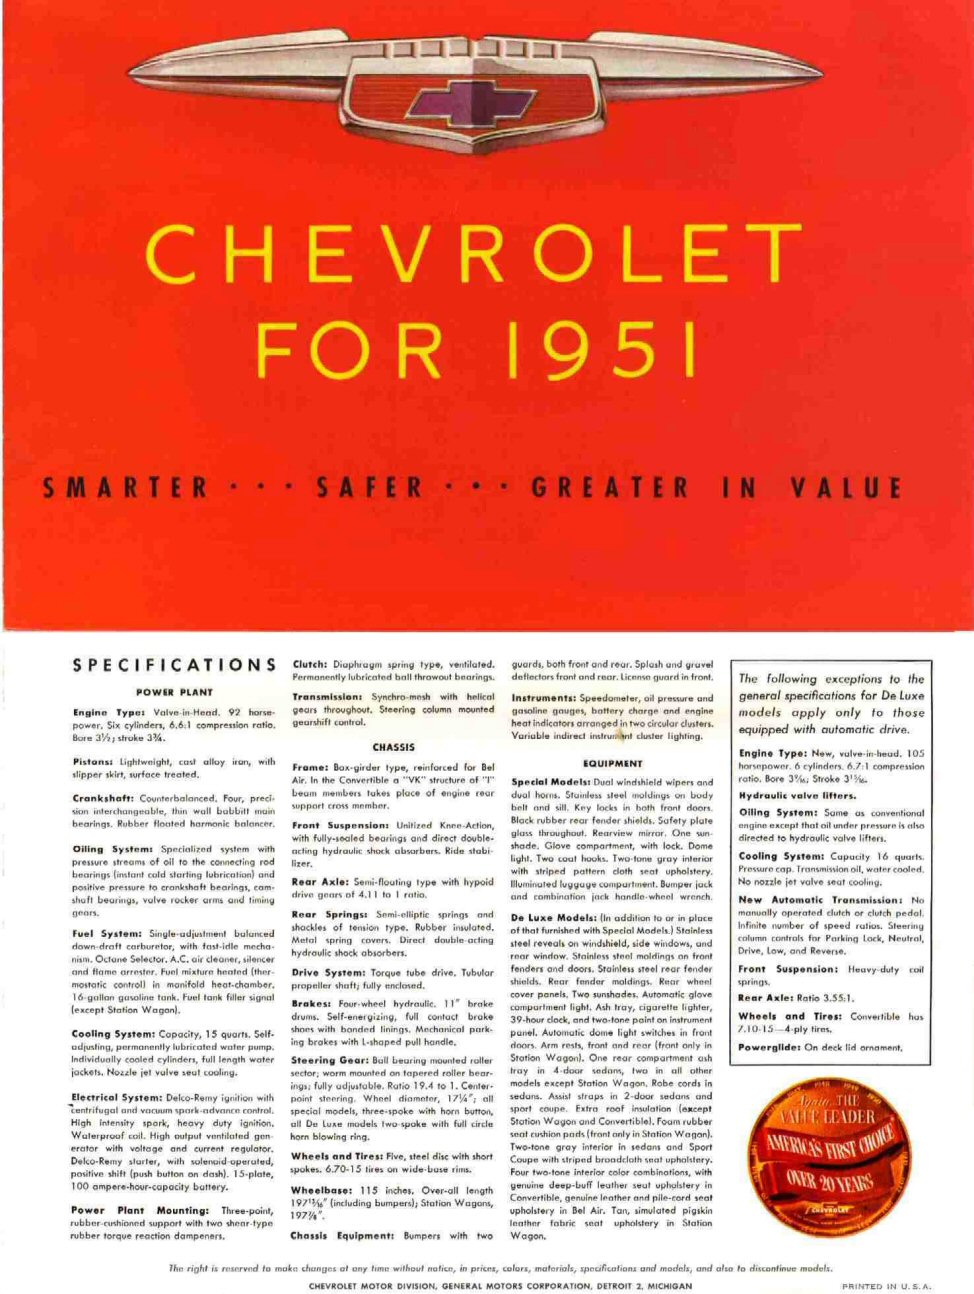 1951_Chevrolet_Foldout-01